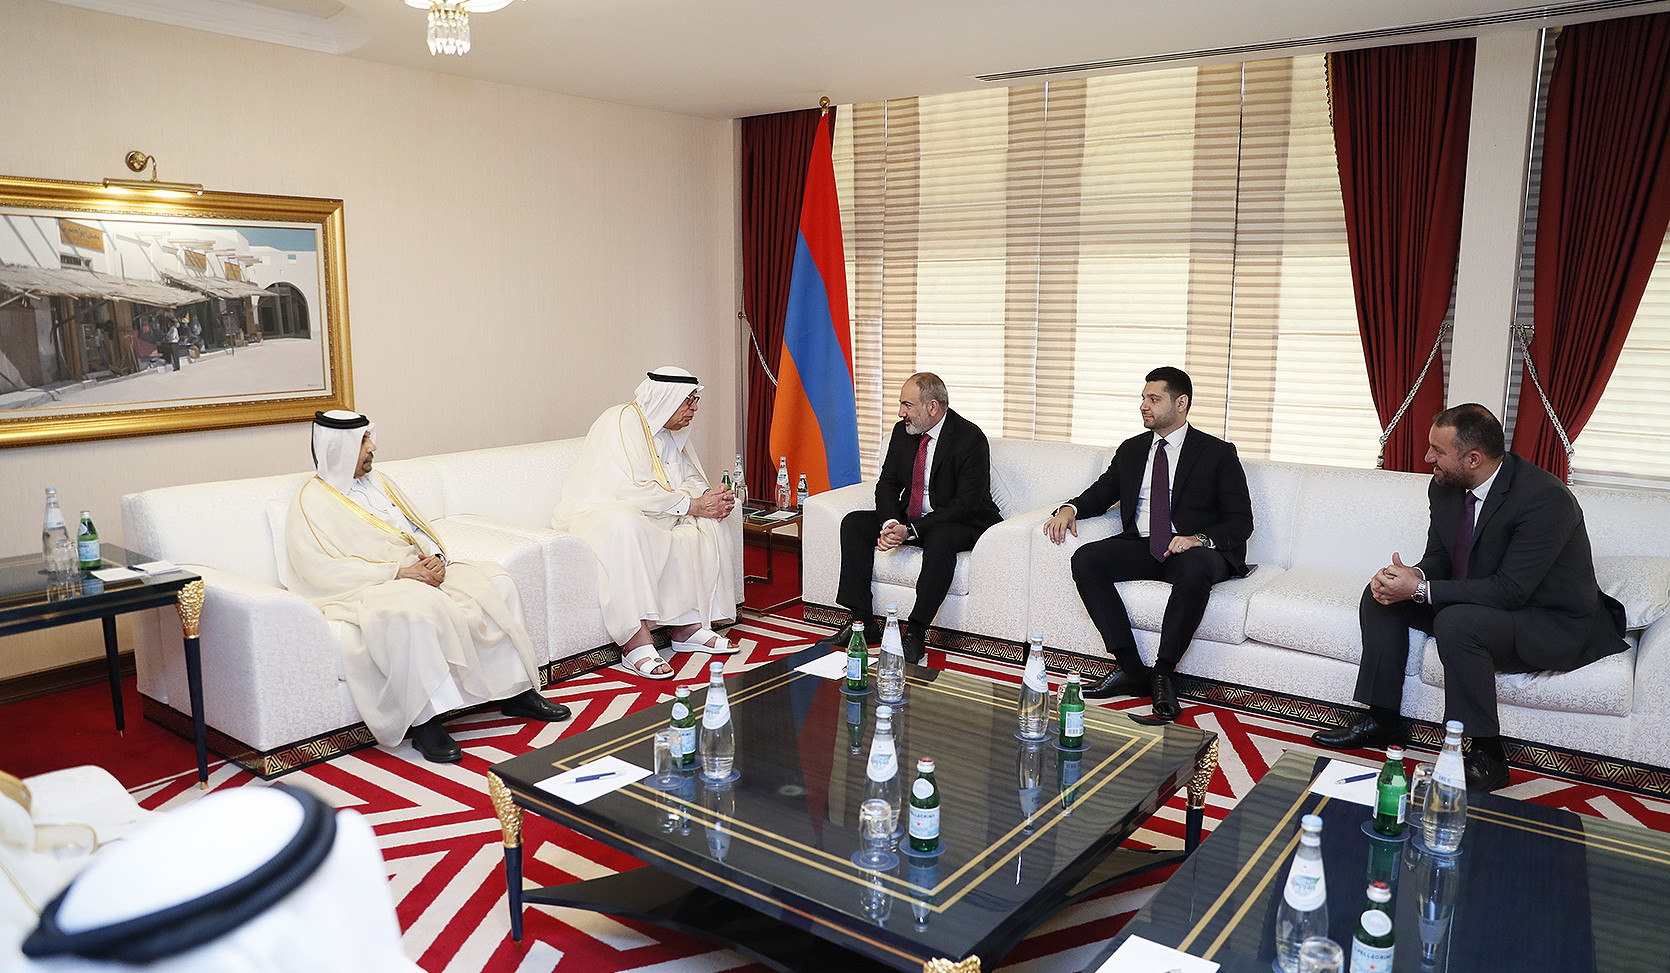 Վարչապետ Փաշինյանը Կատարի գործարար խորհրդի անդամների հետ քննարկել է ՀՀ-ում ներդրումային ծրագրերի իրականացմանը վերաբերող հարցեր